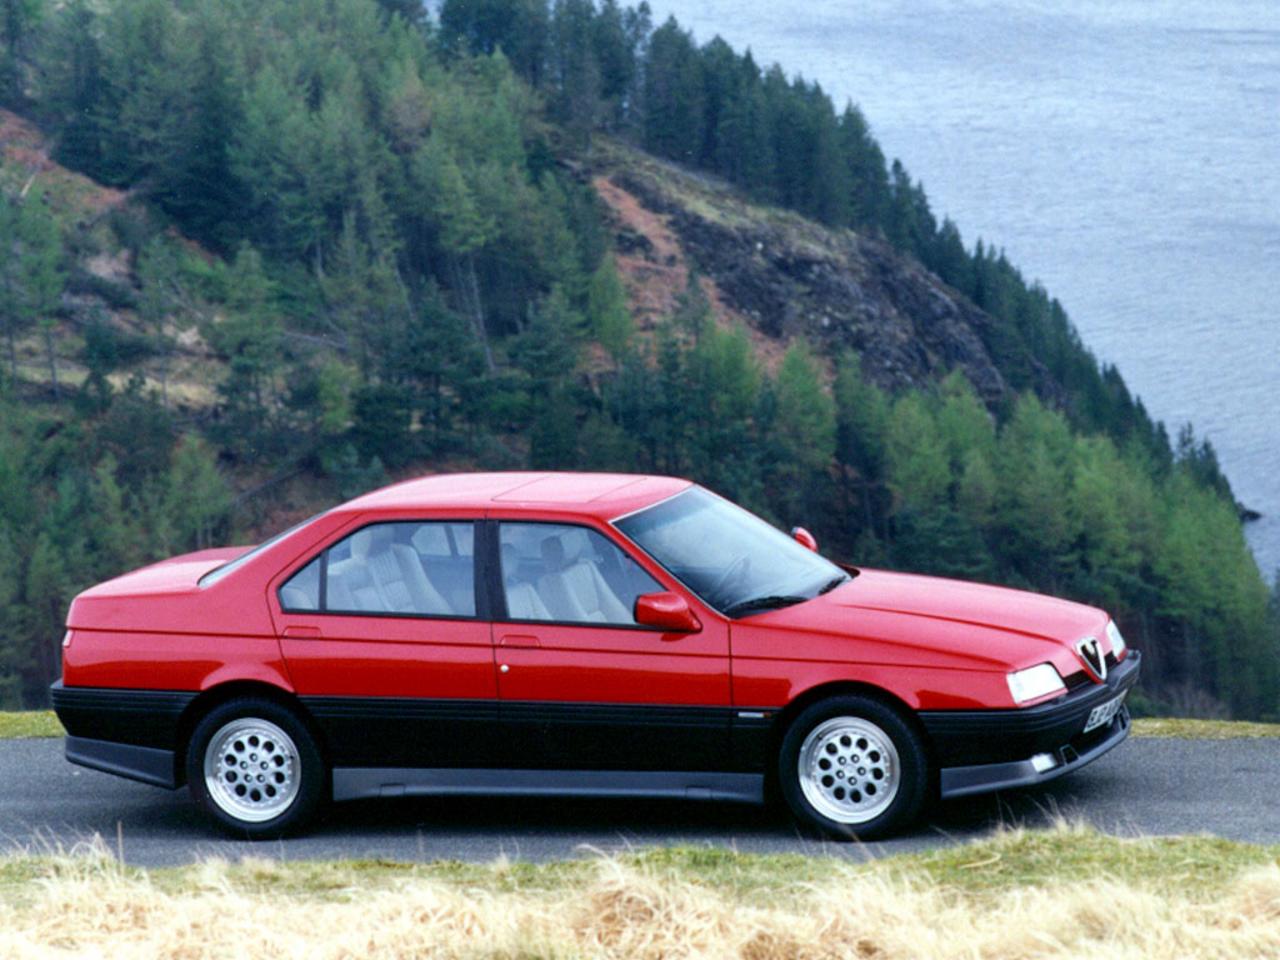 Alfa 164 Q4, den fyrhjulsdrivna och 24-ventilade varianten av toppmodellen Quadrifoglio. Premiär 1993. Iögonfallande kjolpaket och superhäftiga fälgar. Snabb!